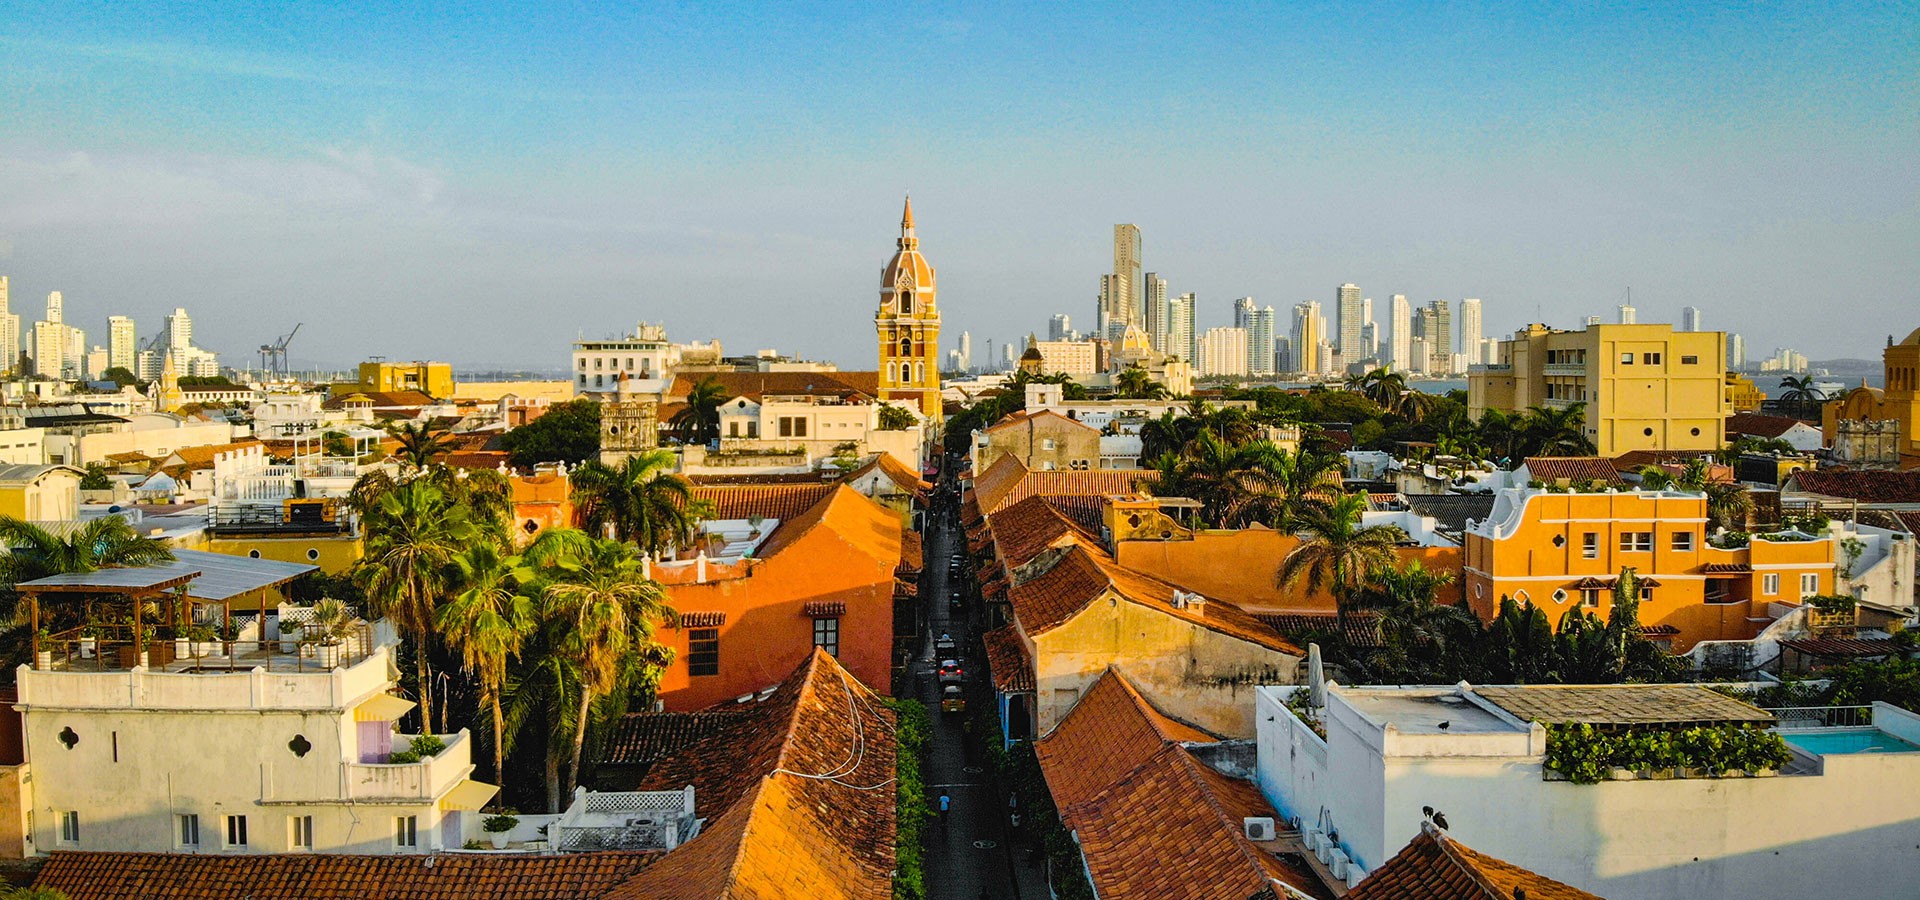 Cartagena de Indias, le joyau colonial de la Colombie